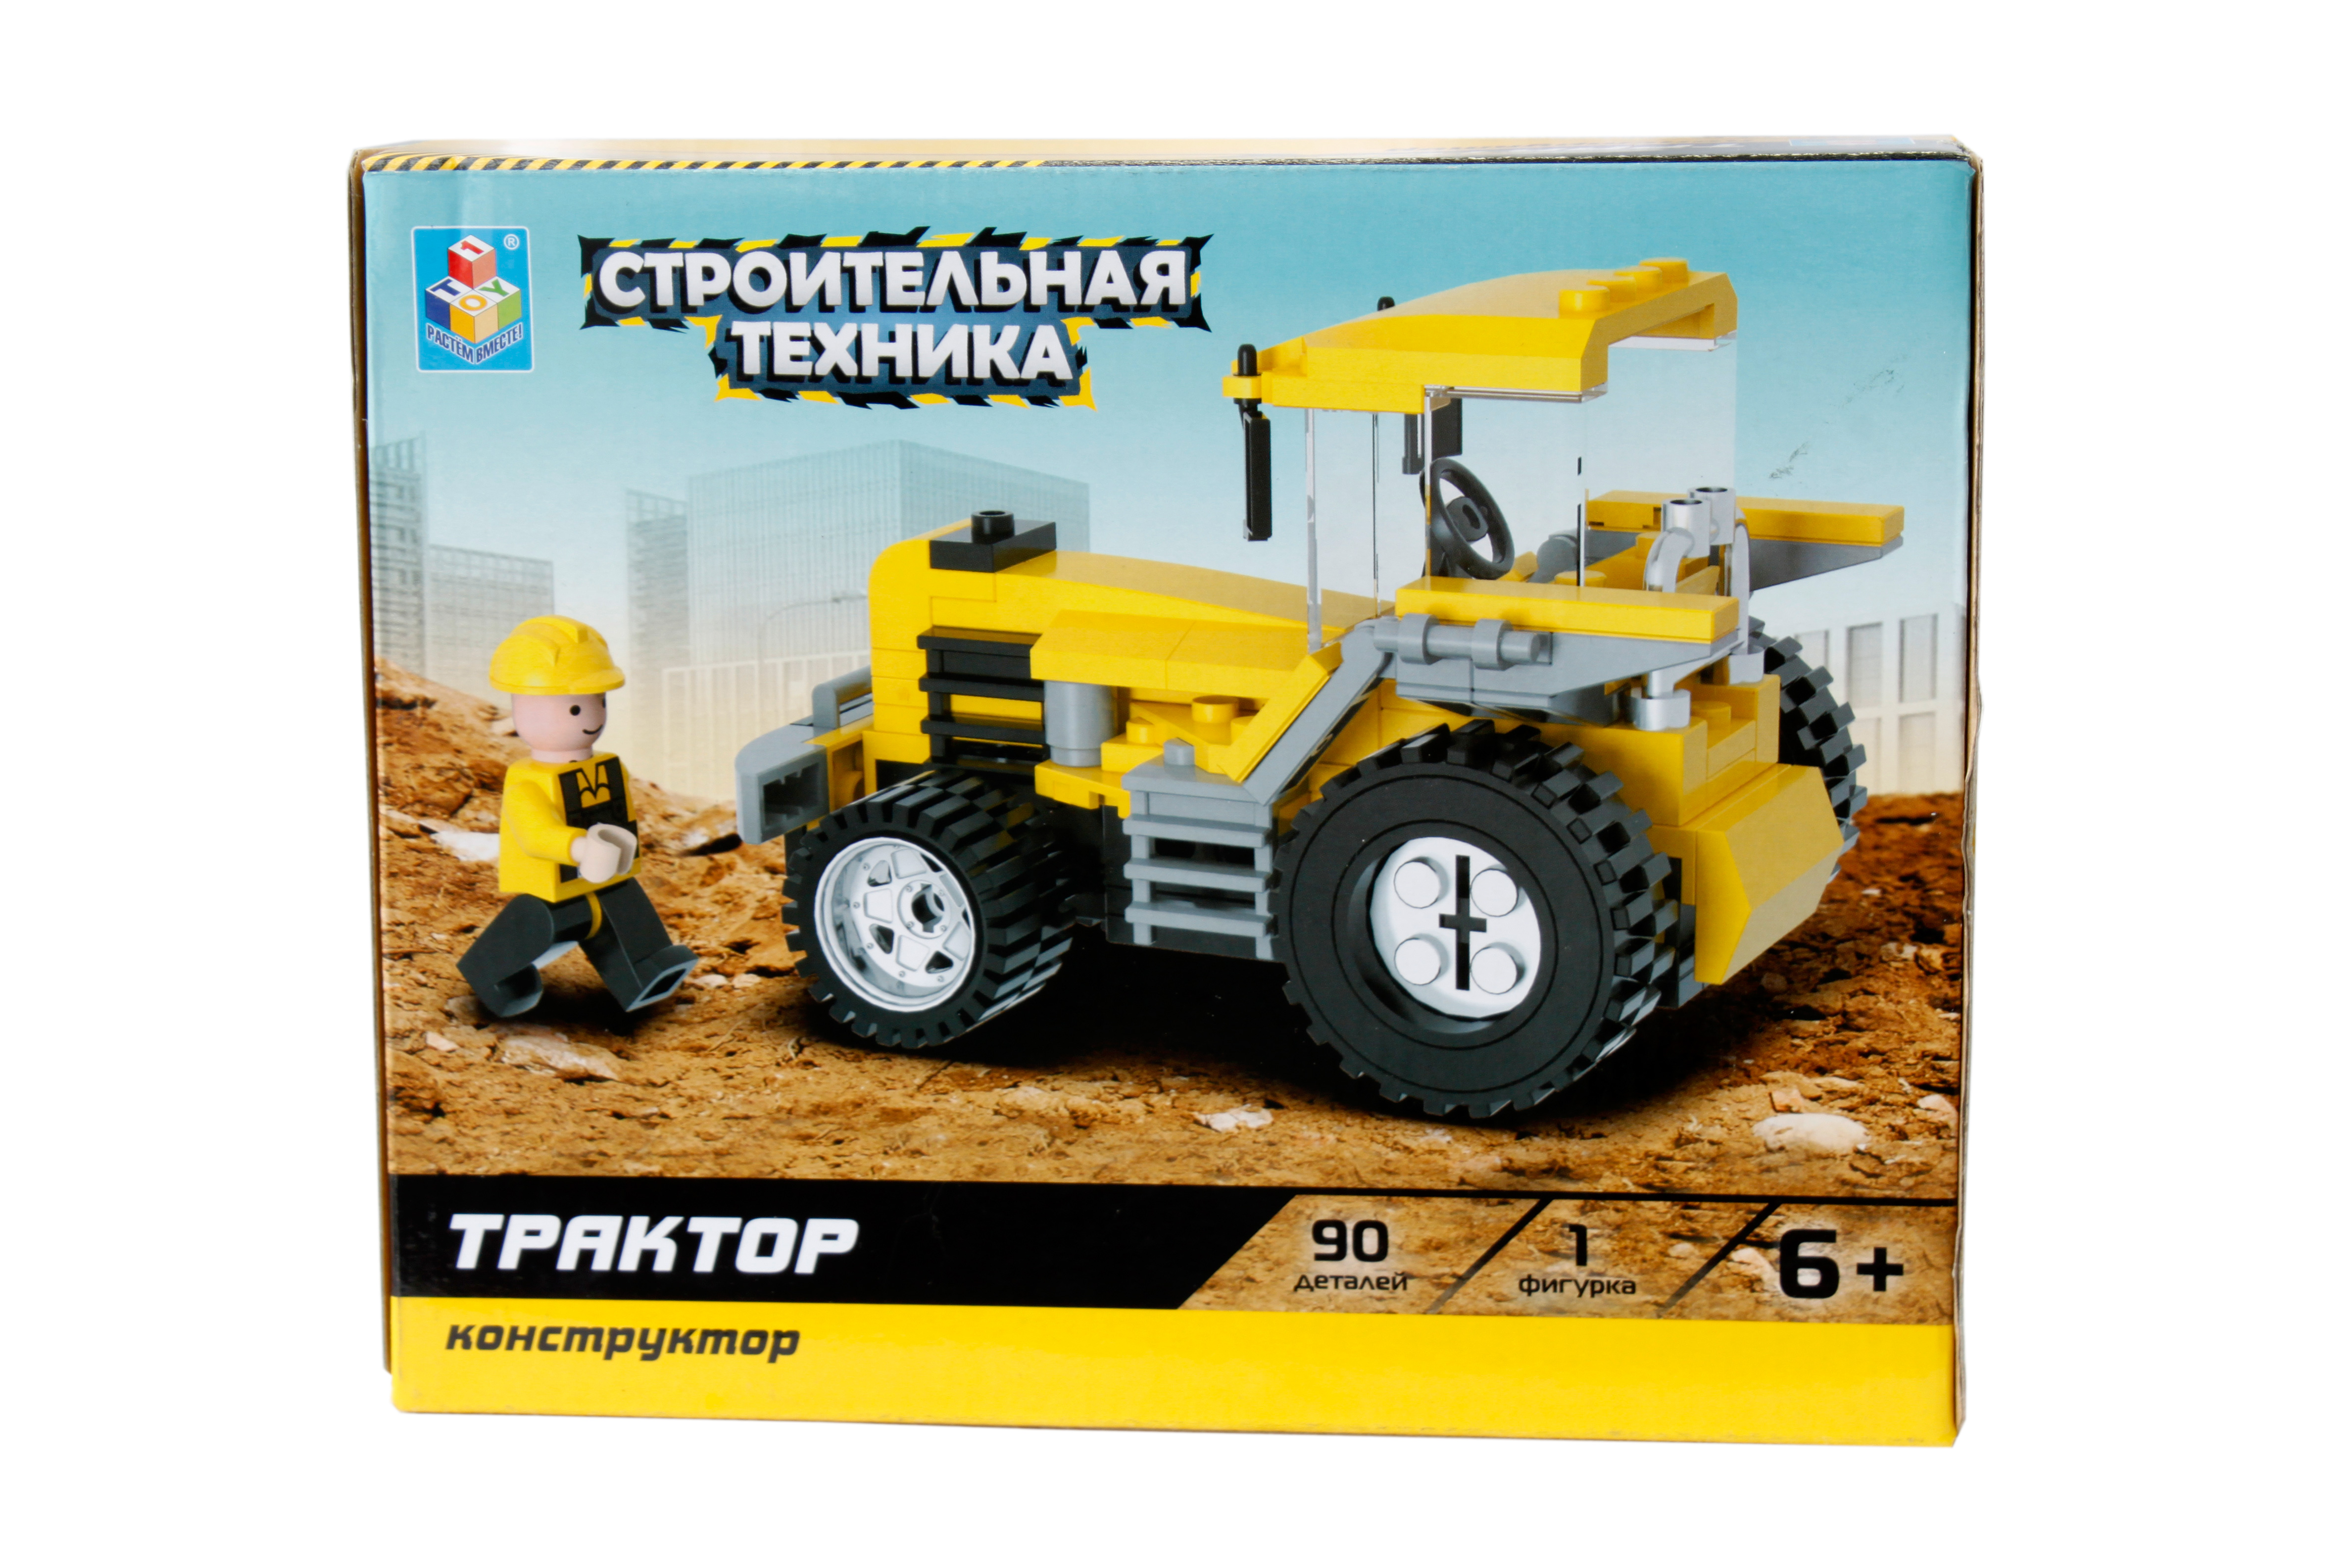 Конструктор 1 Toy "Строительная техника" Трактор 90 деталей